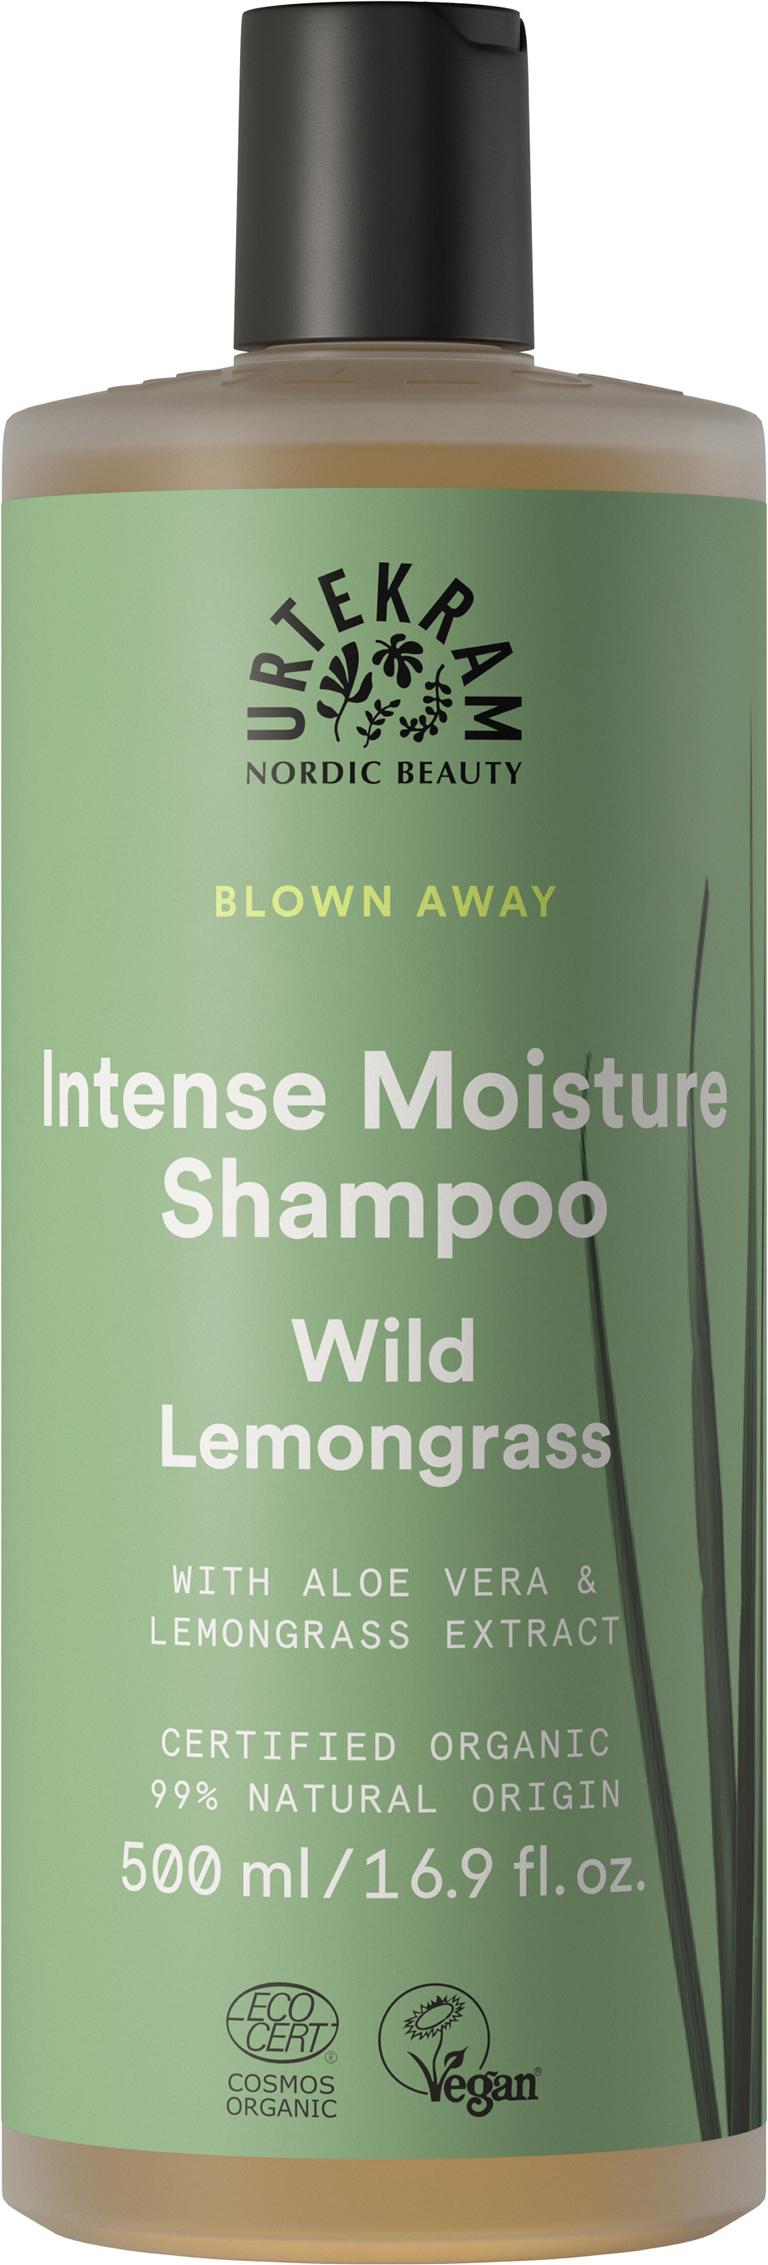 Urtekram Wild Lemongrass Shampoo 500ml 500ml